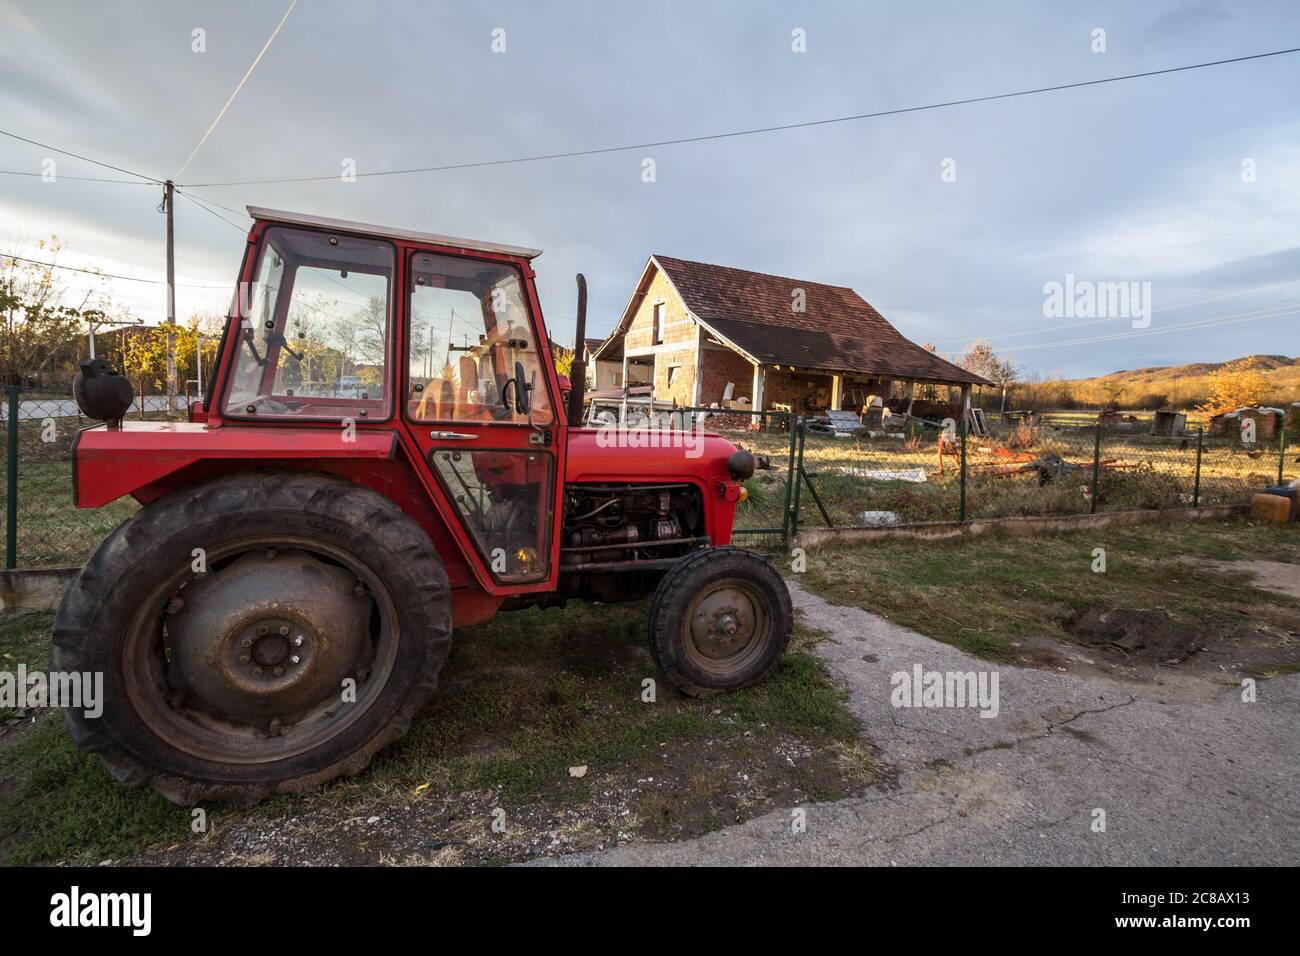 KRALJEVO, SERBIA - 10 NOVEMBRE 2019: Trattore di fronte ad una fattoria nella campagna della Serbia, in un tipico terreno agricolo rurale della regione di S. Foto Stock